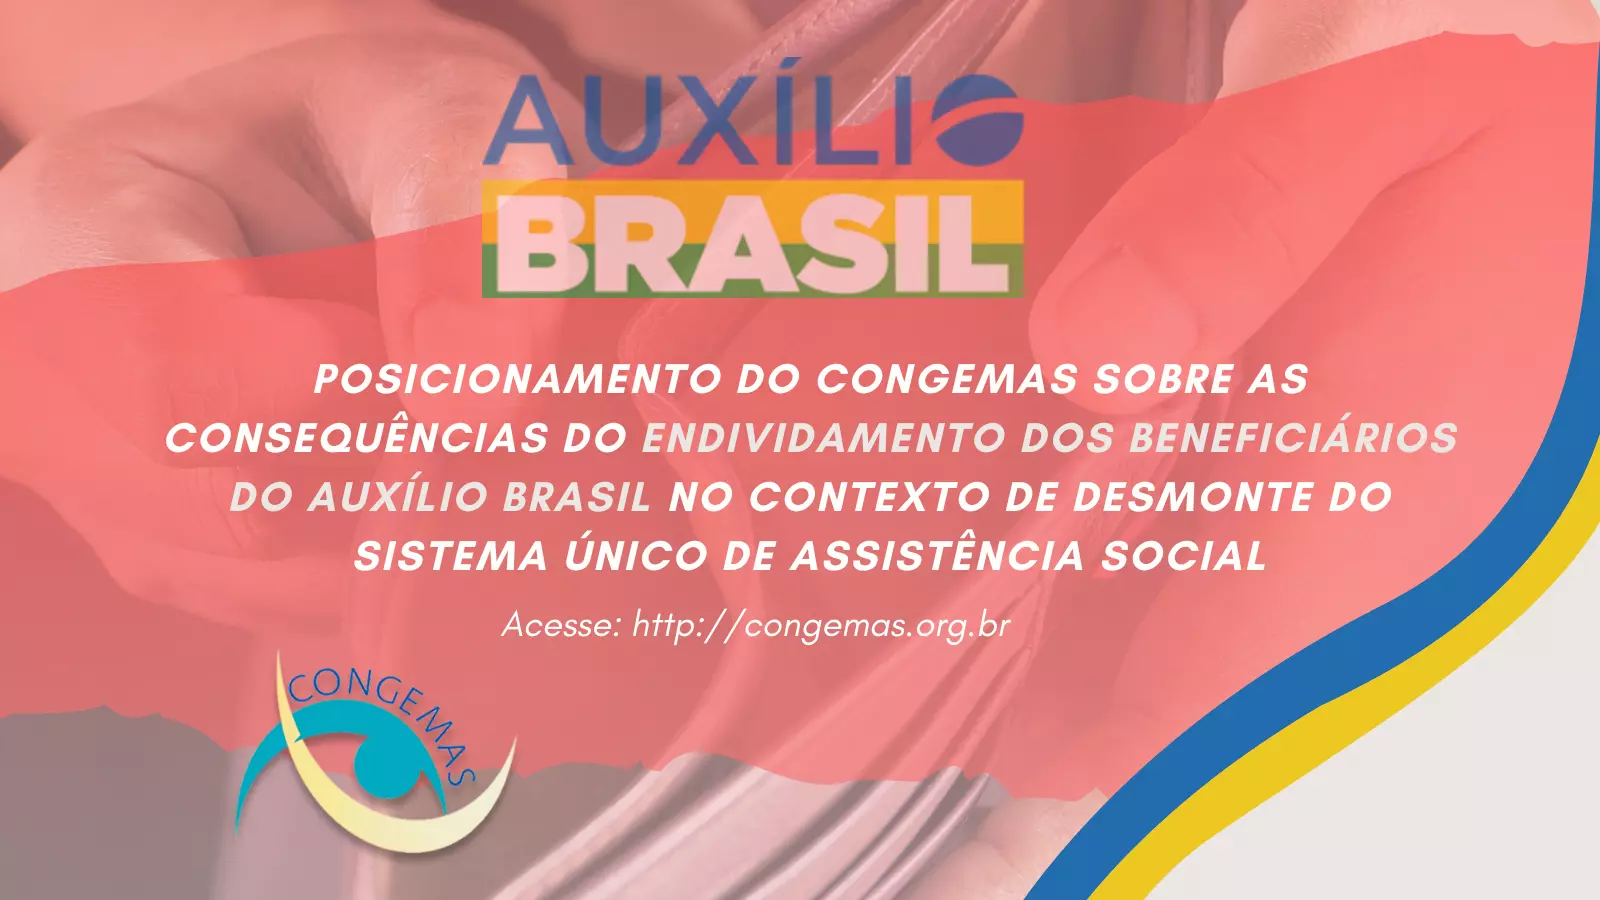 POSICIONAMENTO DO CONGEMAS - CONSEQUÊNCIAS DO ENDIVIDAMENTO DOS BENEFICIÁRIOS DO AUXÍLIO BRASIL